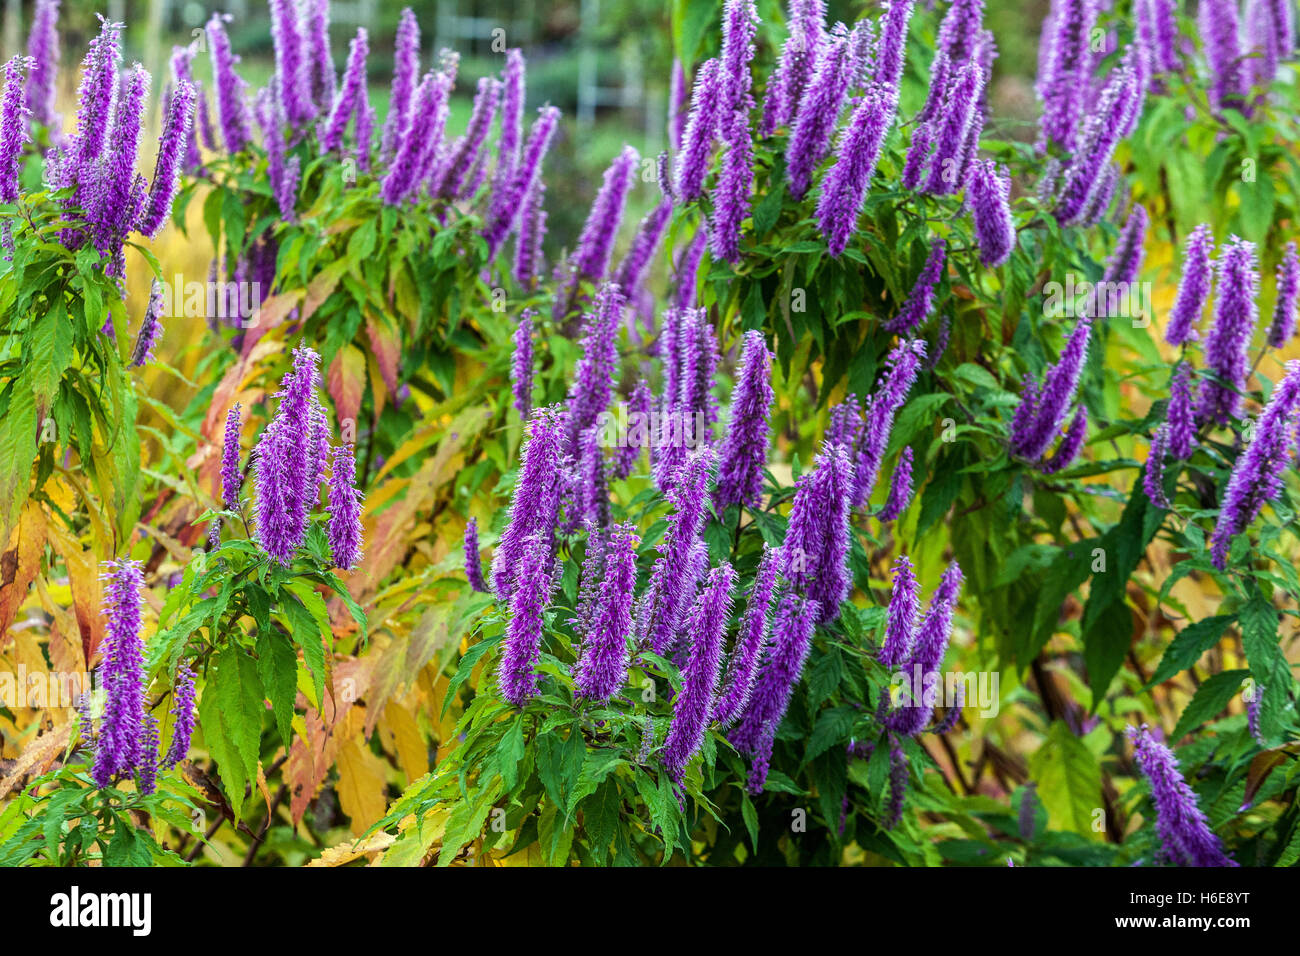 Mint bush, Elsholtzia stauntonii, autumn colors Stock Photo